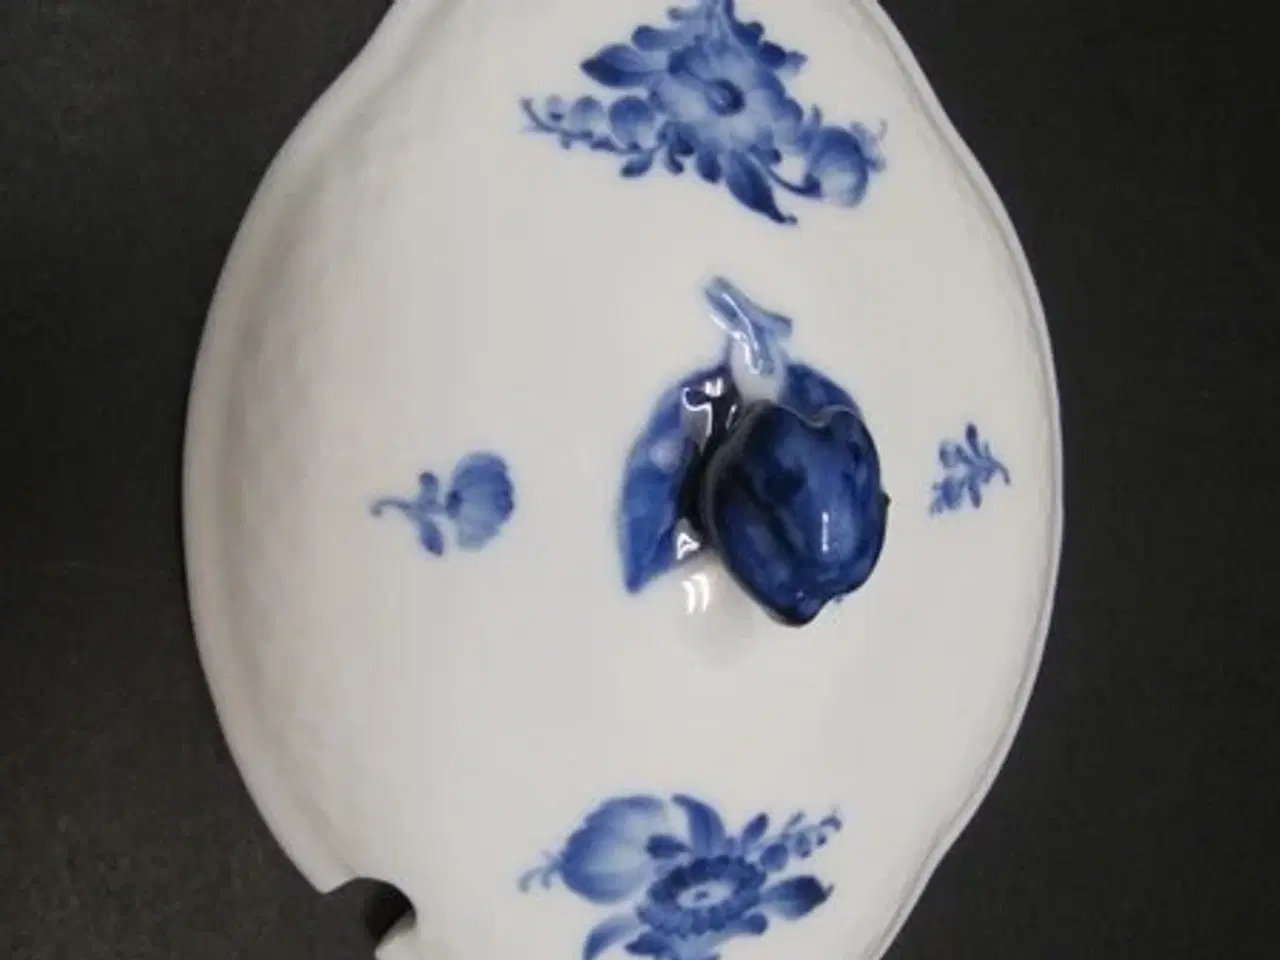 Billede 1 - Blå Blomst Flettet - Låg til Sauceterin - Indvendig randmål 15x11 cm. R.C. 8160 - 2. Sort - Helt og i orden.